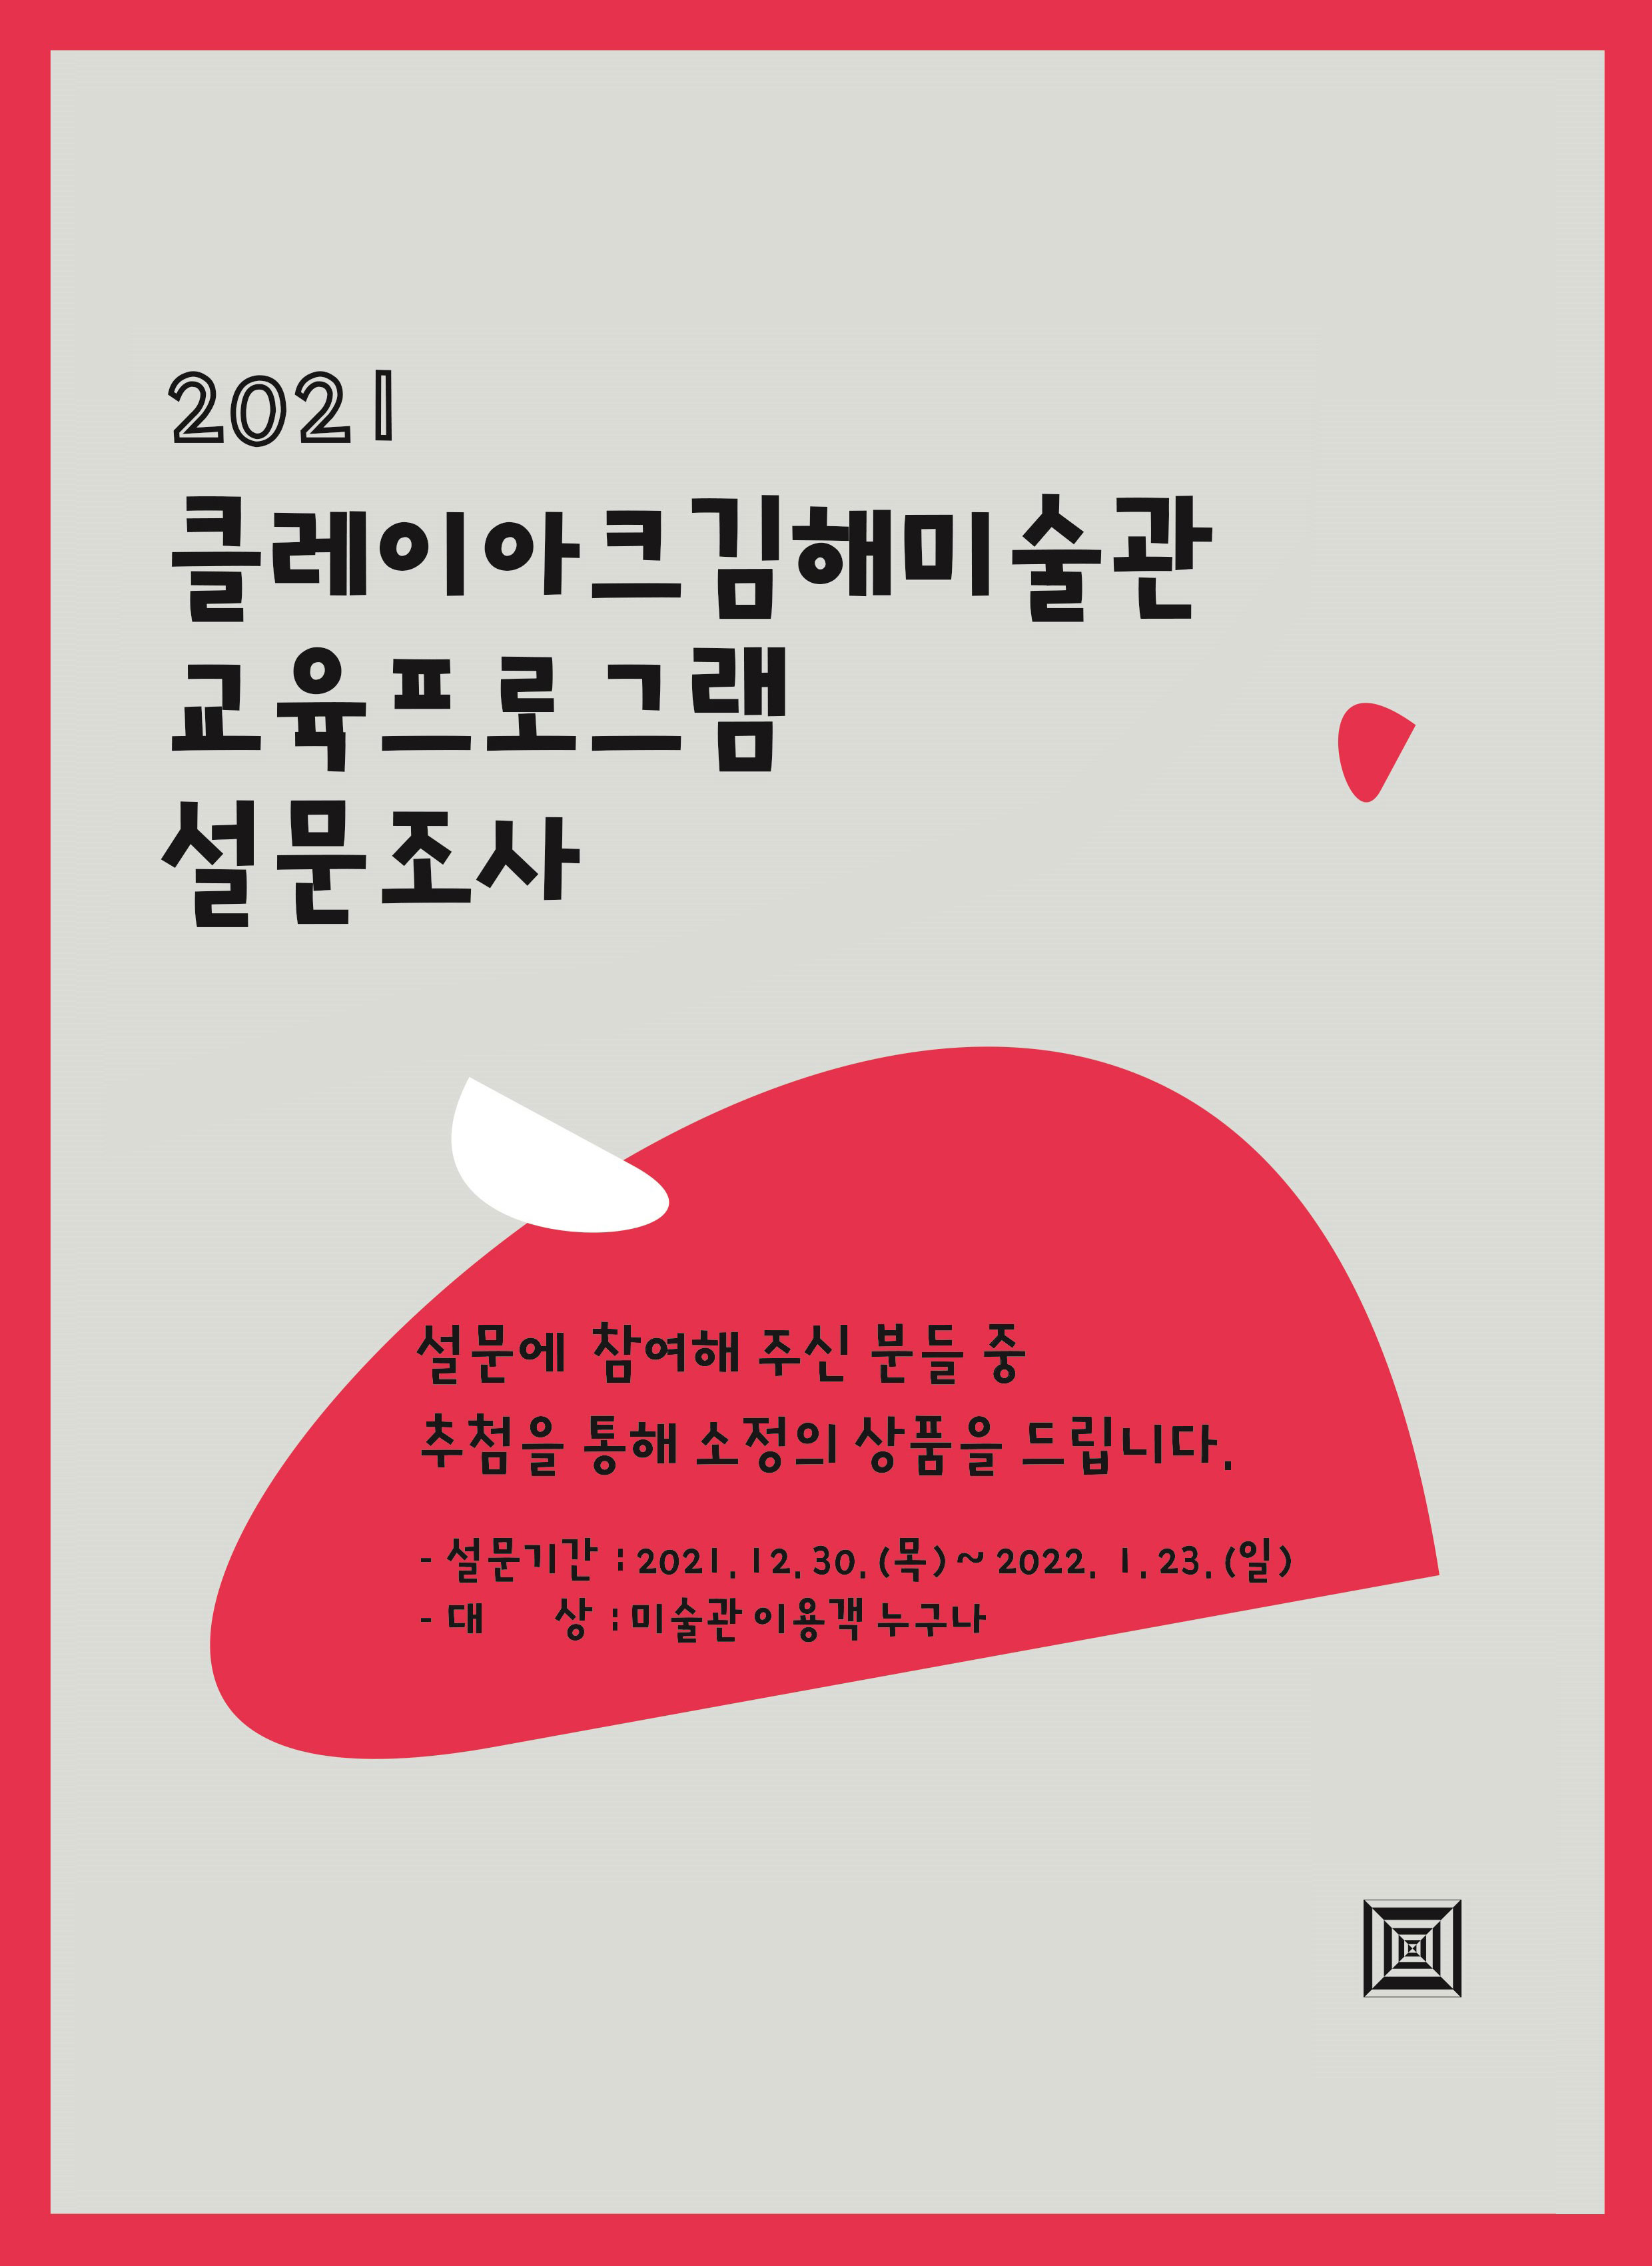 2021 클레이아크김해미술관 교육프로그램 설문조사 안내